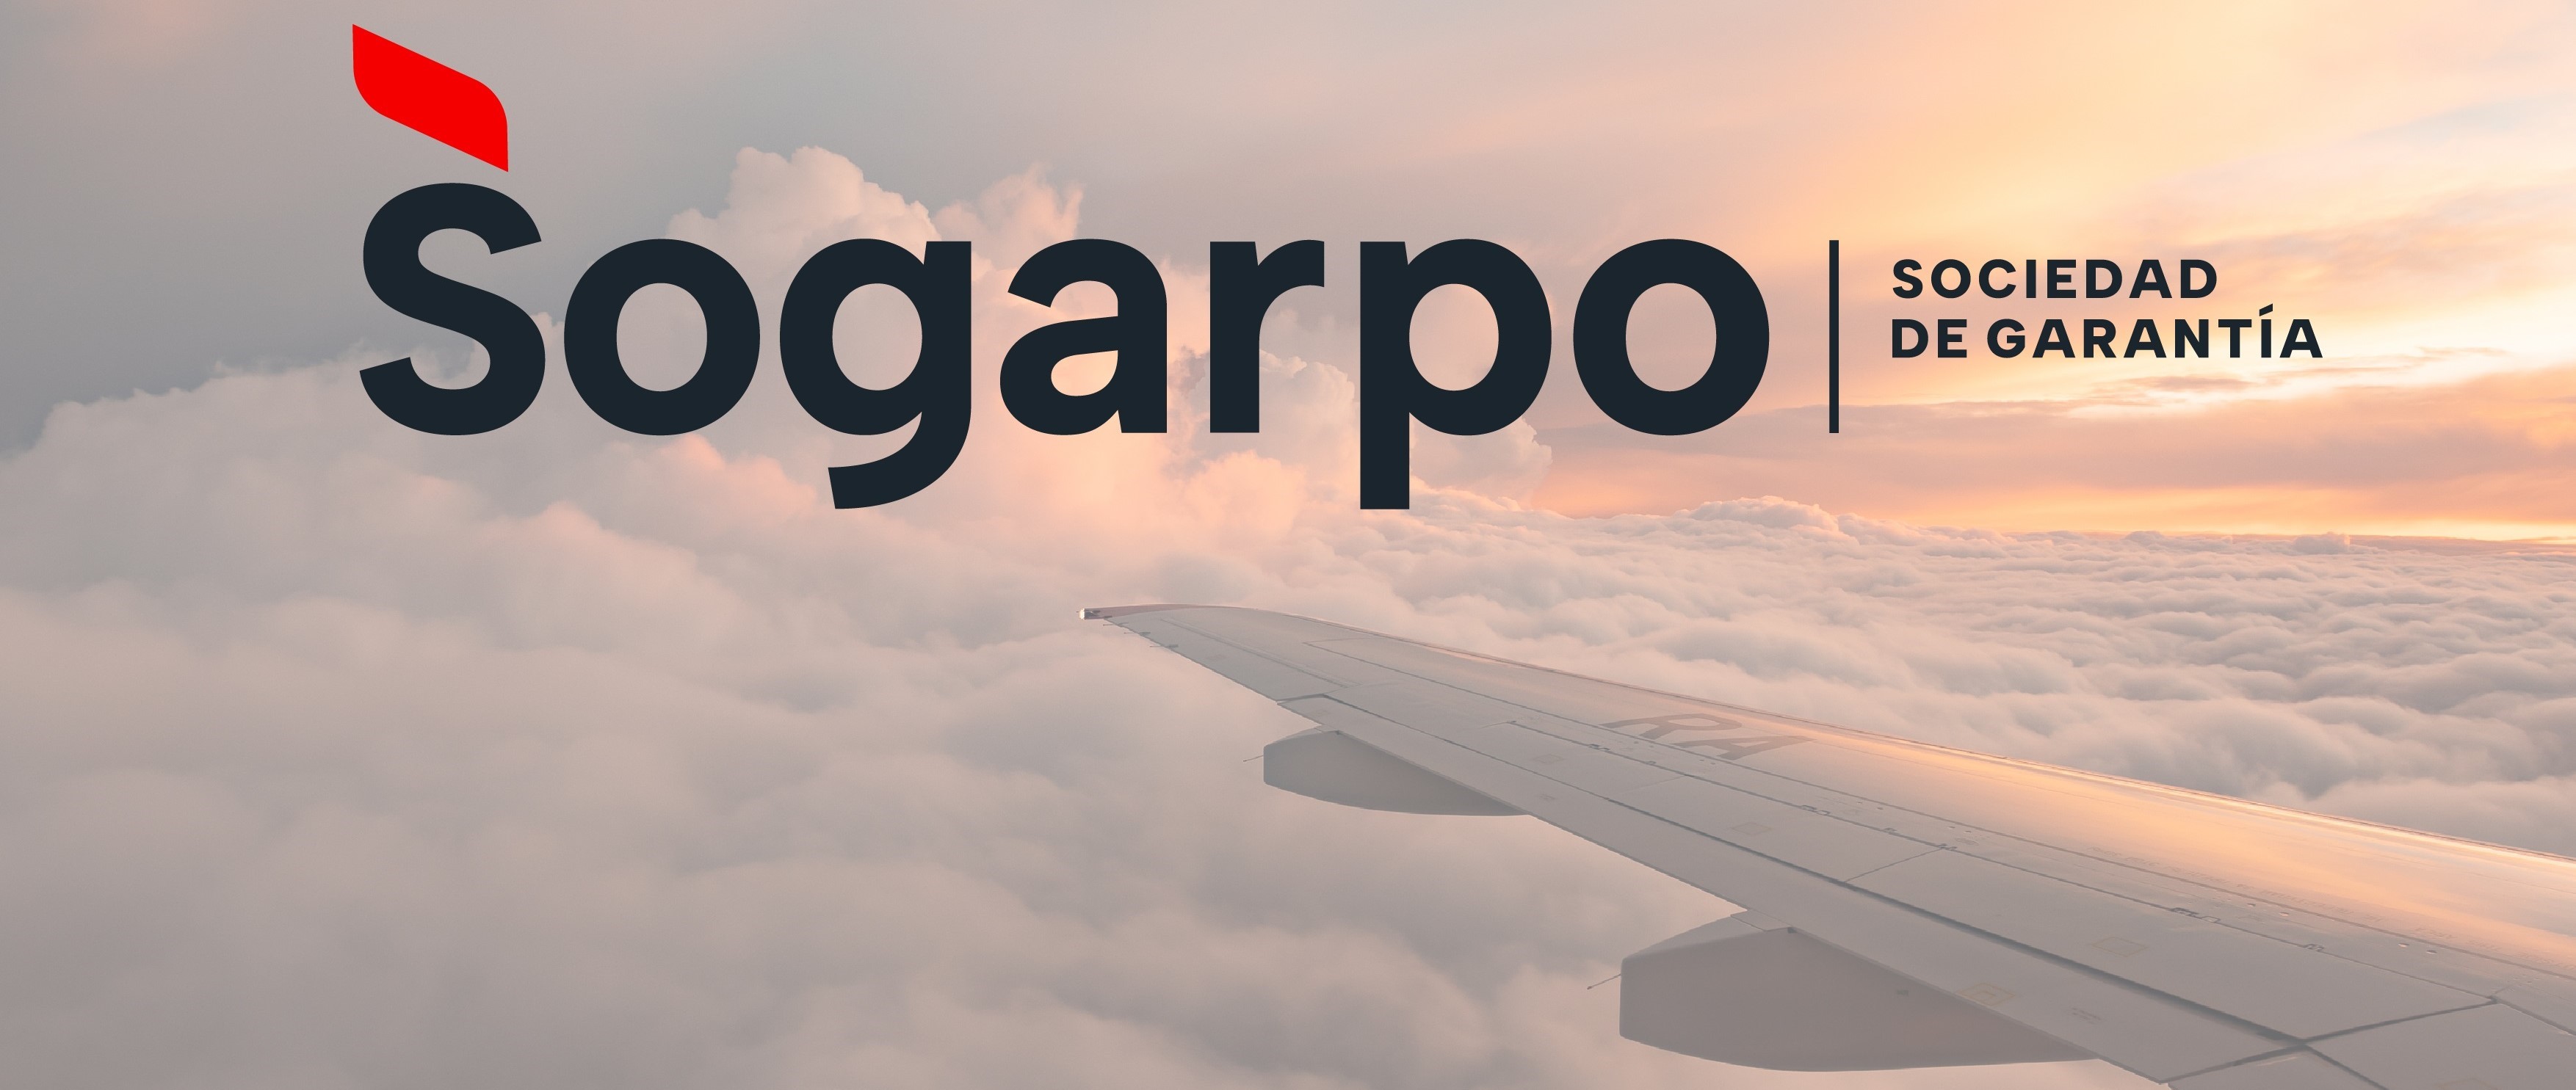 imagen de Sogarpo moderniza su imagen corporativa, más cercana, digital y conectada, y activa la campaña “Tu aval, tu futuro”